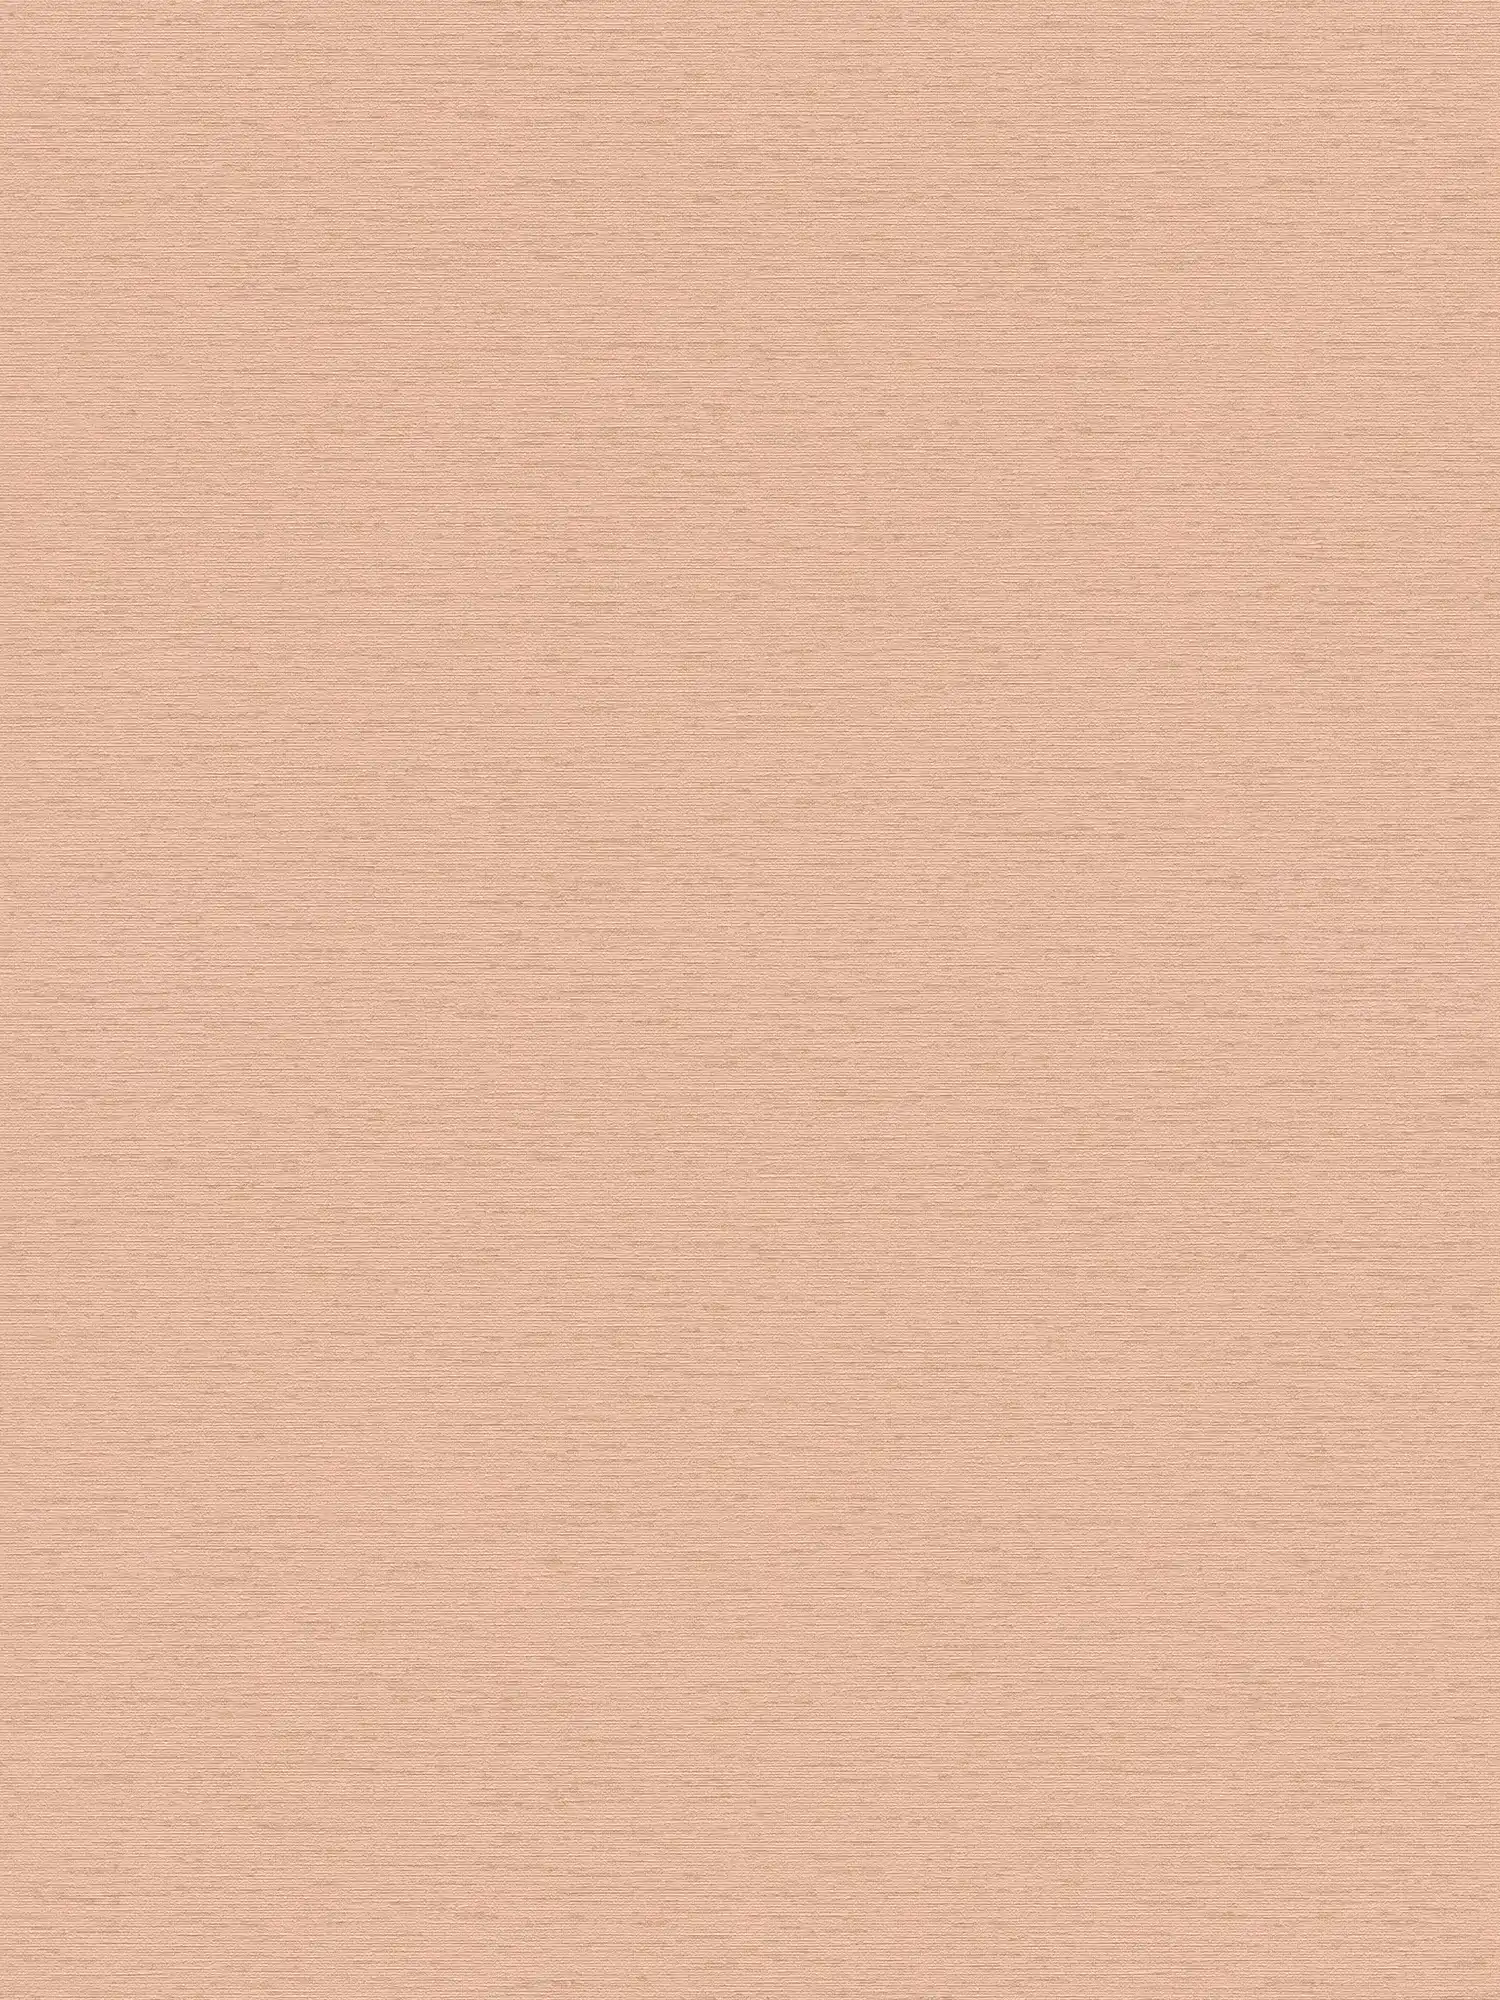 papier peint en papier uni avec structure textile, mat - rose
